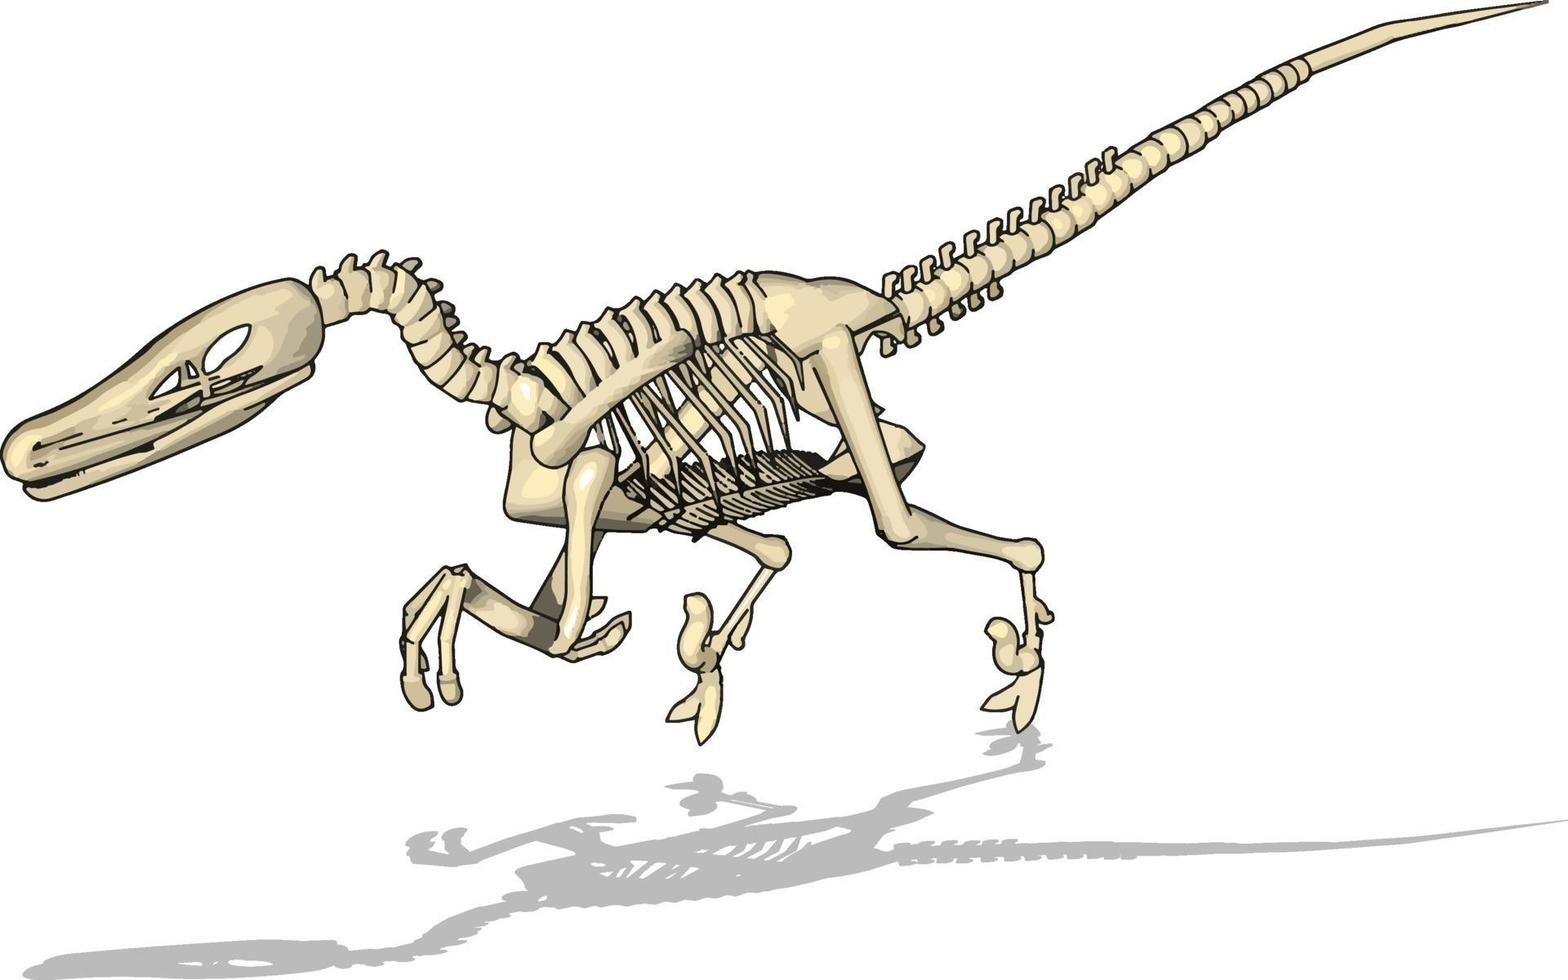 Dino-Skelett, Illustration, Vektor auf weißem Hintergrund.